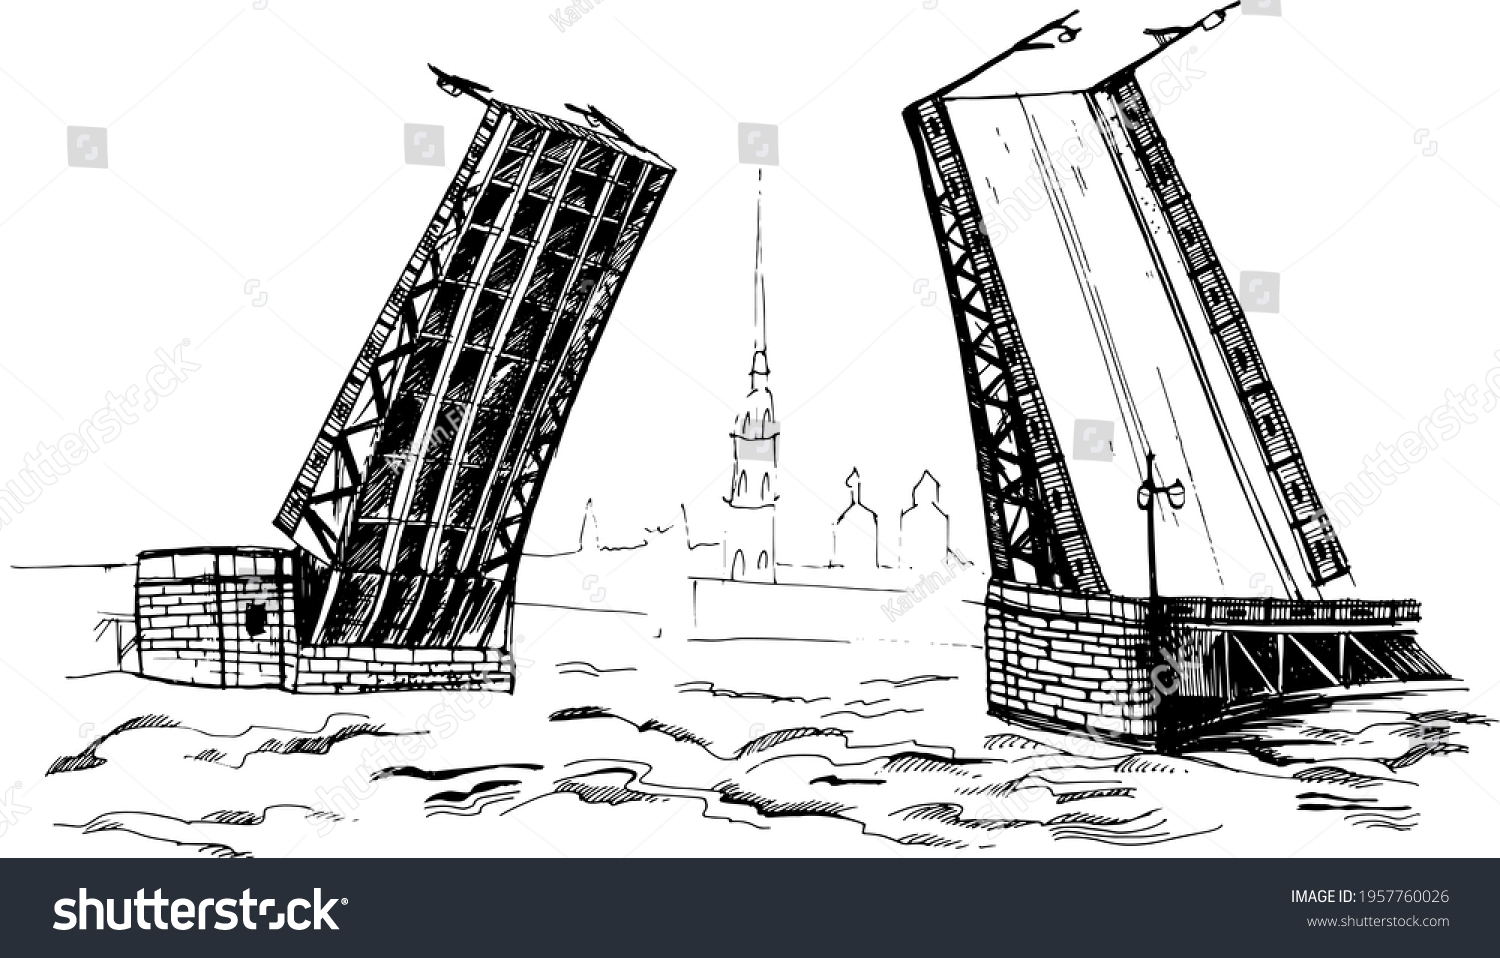 Как нарисовать разводной мост в Санкт-Петербурге поэтапно